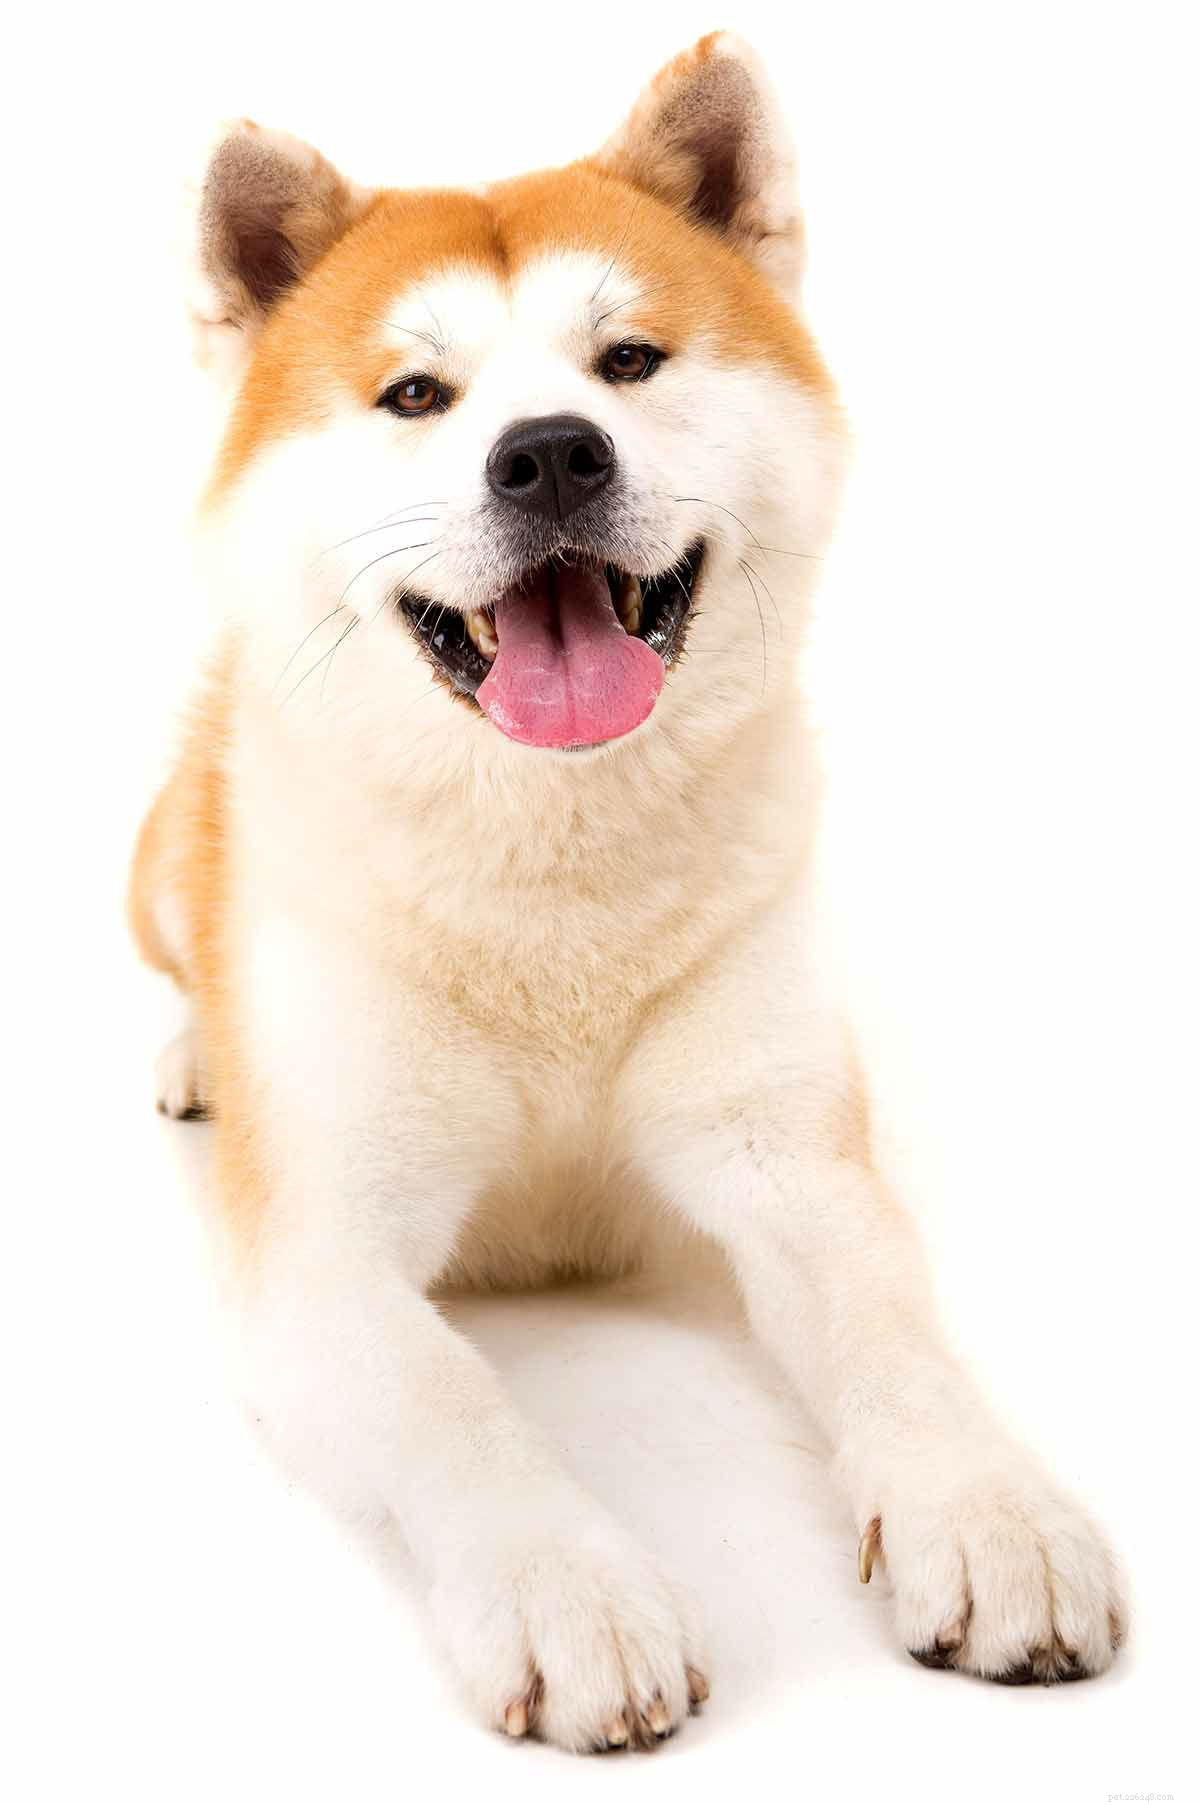 Centre d information sur la race de chiens Akita - Un guide complet sur l Akita